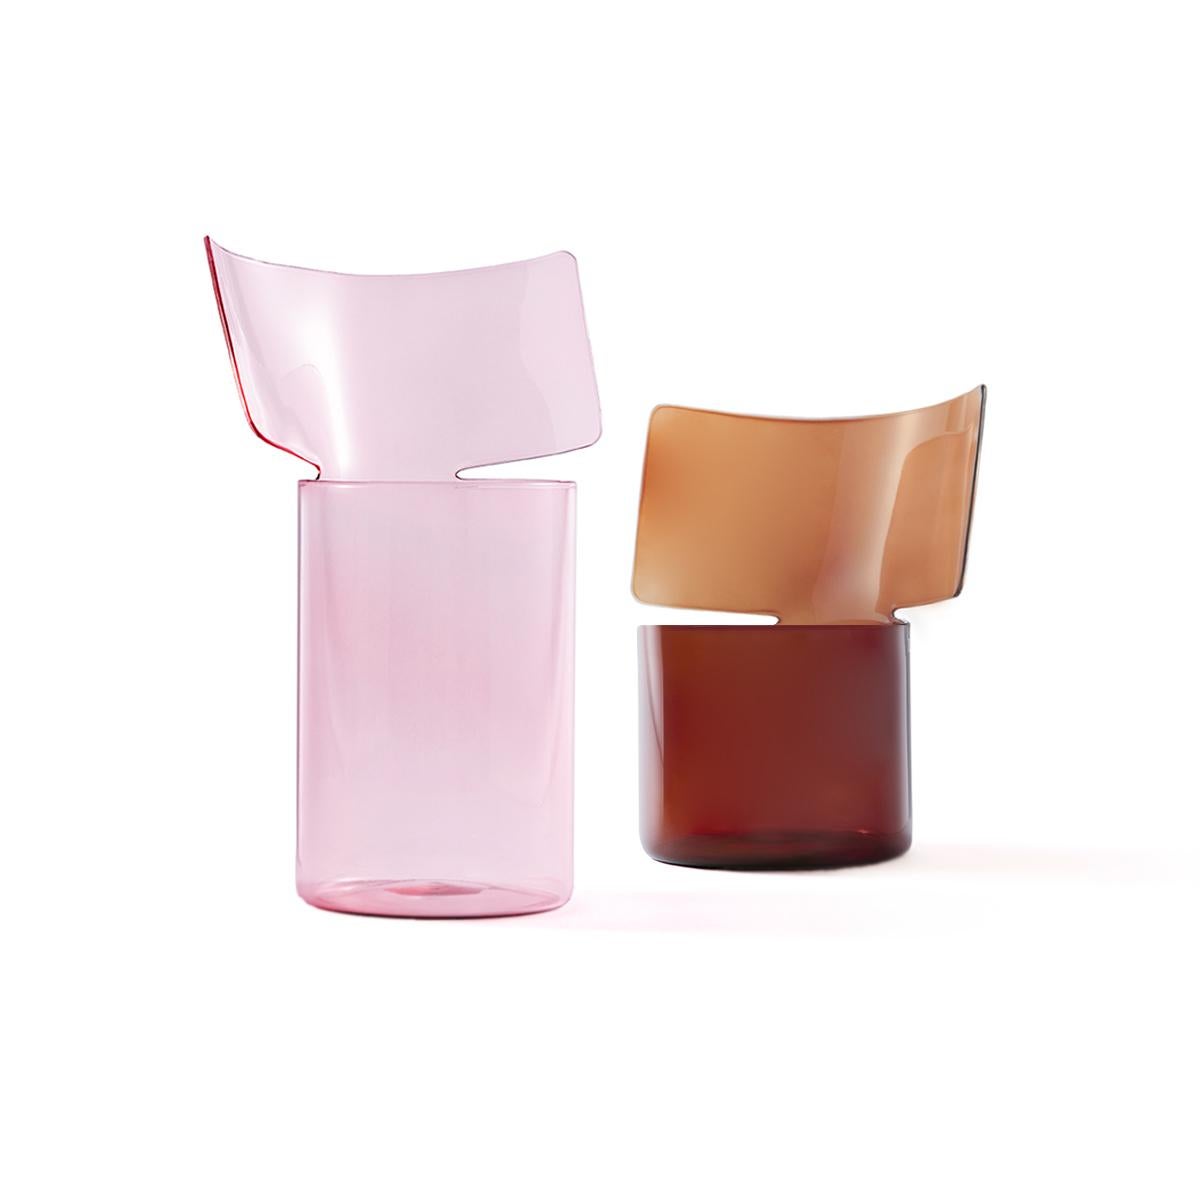 Riflessi est un projet de Böjte - Bottari pour Paola C. présenté en 2017.
Ce vase est conçu pour accueillir tous les types de fleurs, et il est fabriqué en verre borosilicaté soufflé à la bouche de couleur ambre. La Collectional comprend deux